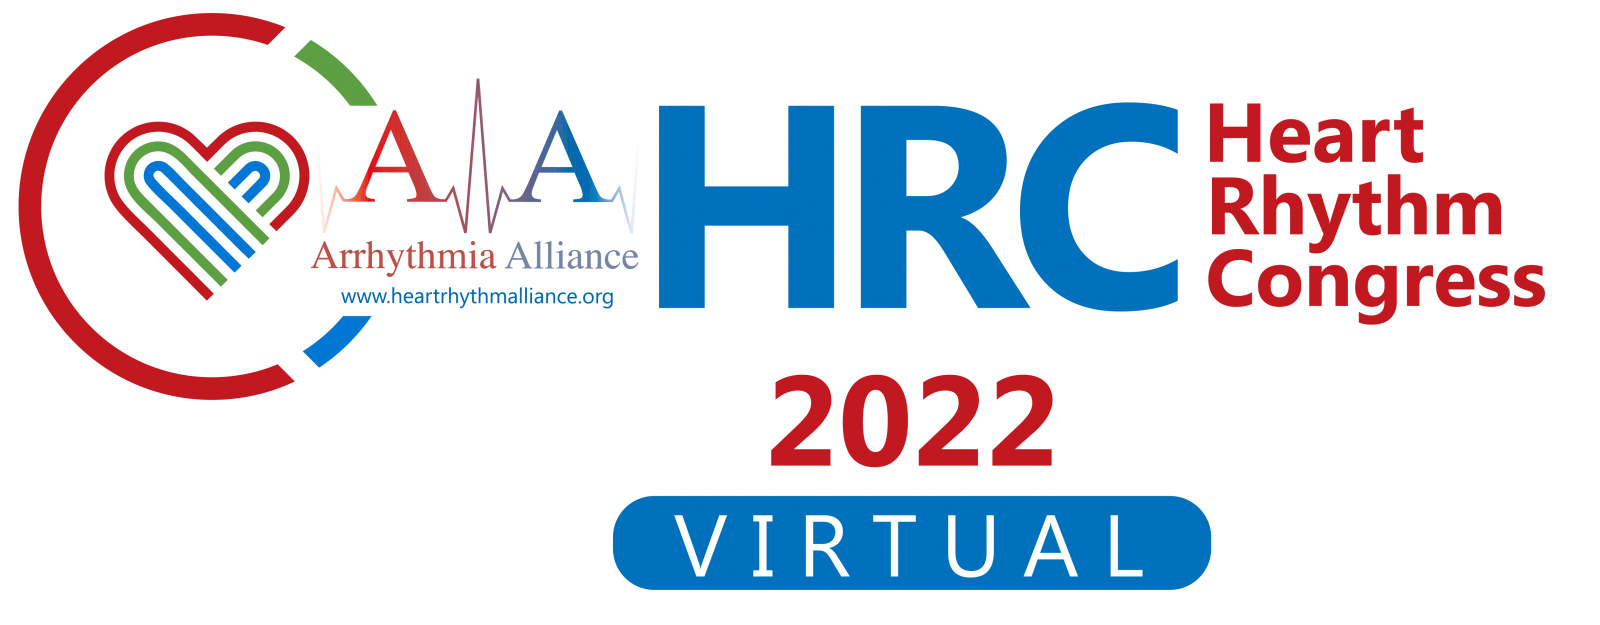 A-A Heart Rhythm Congress Virtual 2022